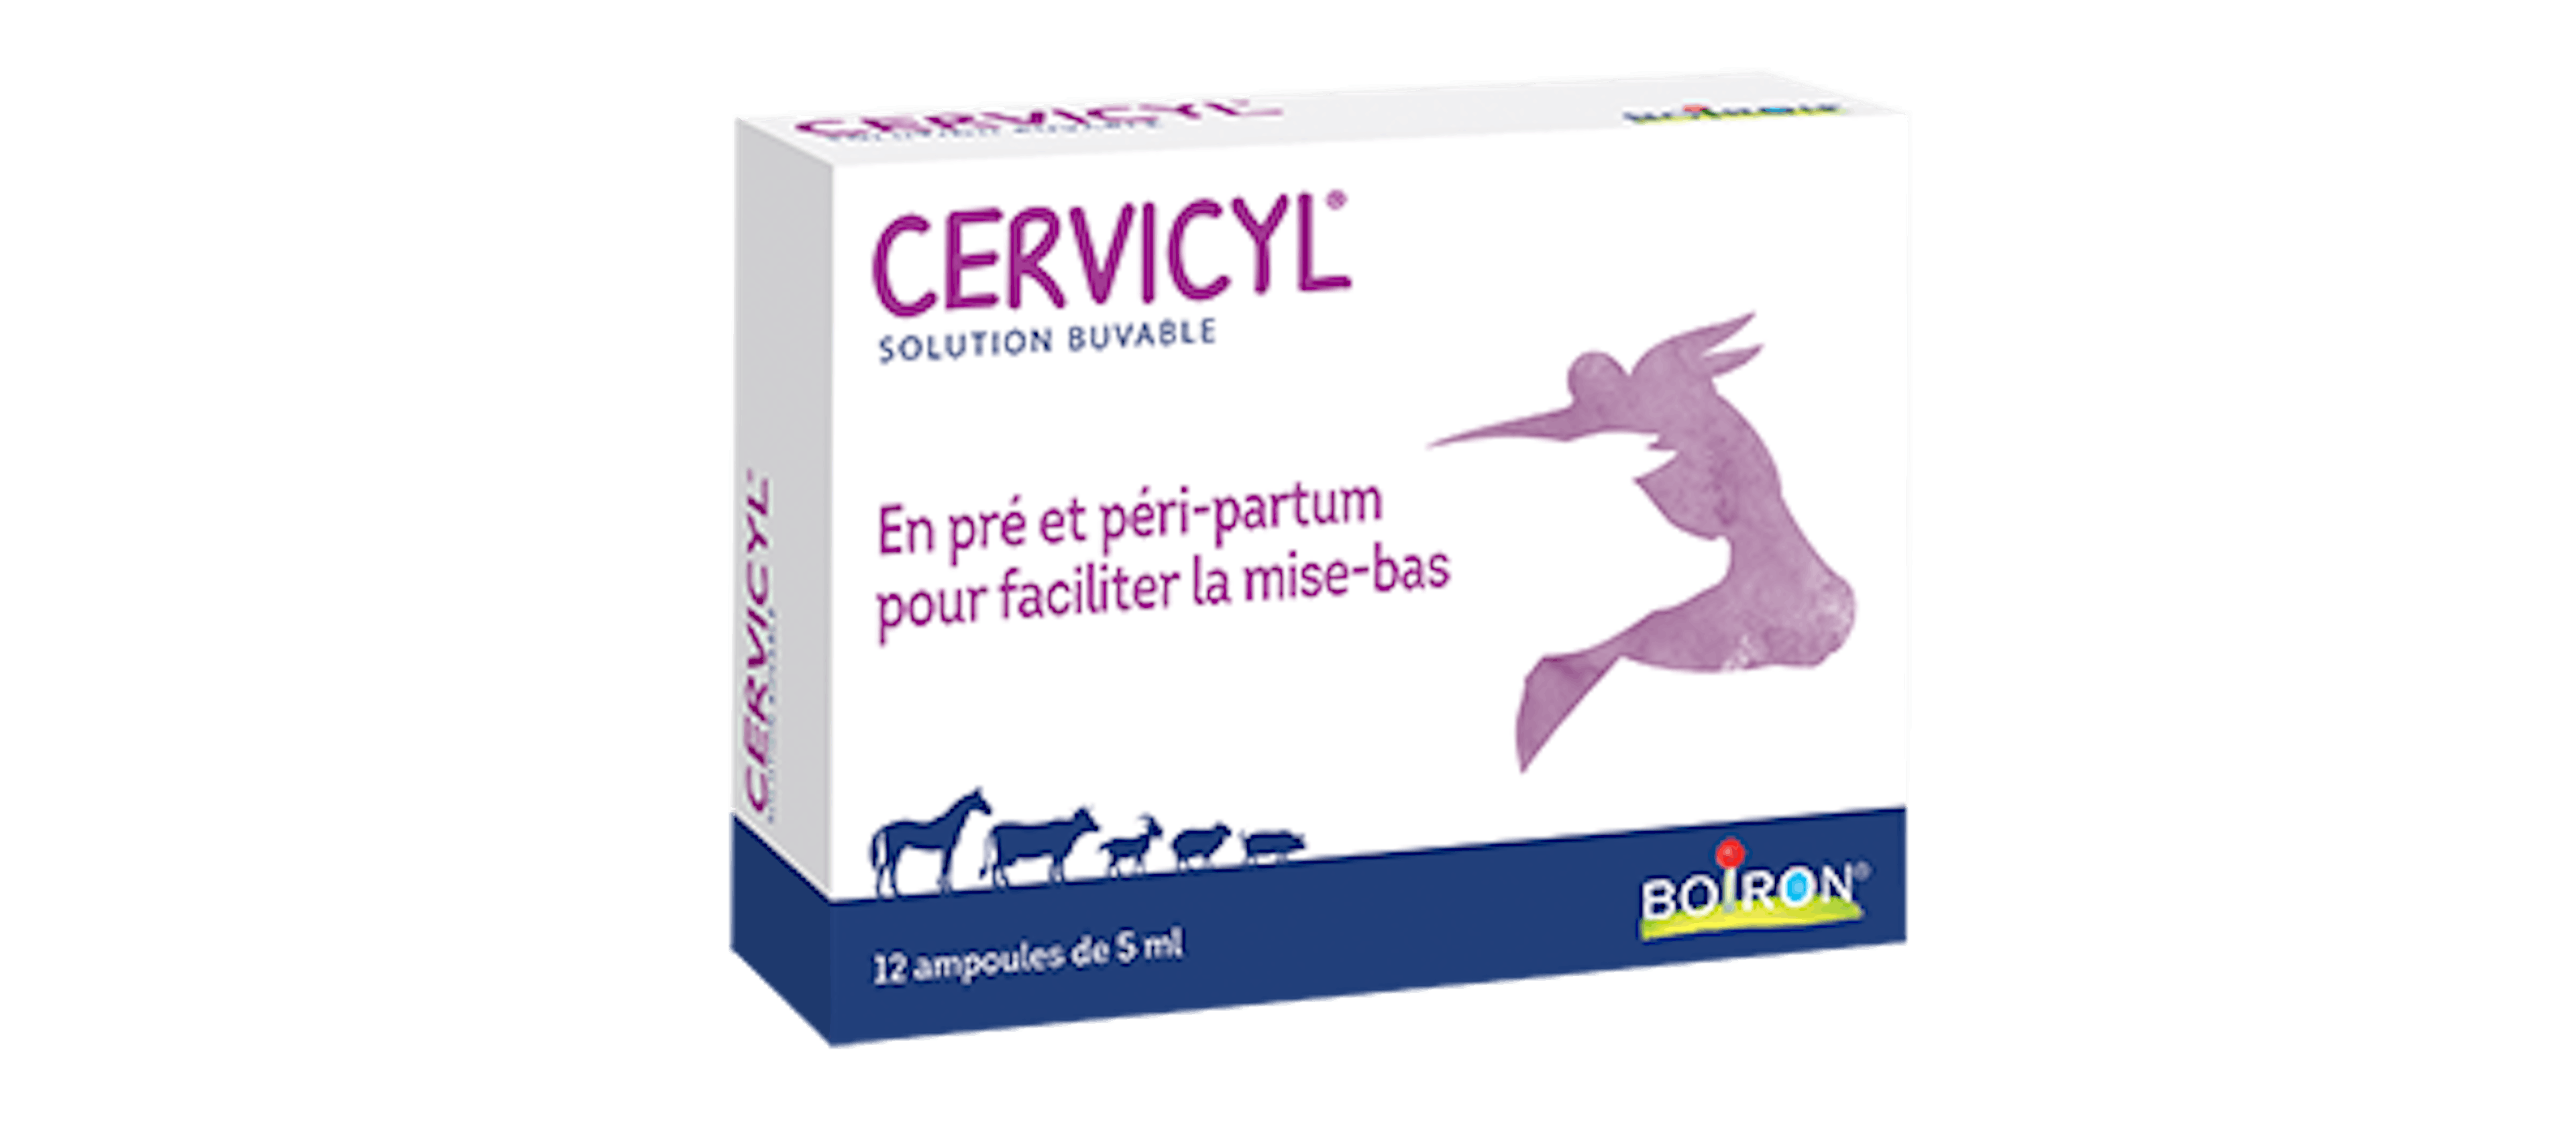 Cervicyl Boiron